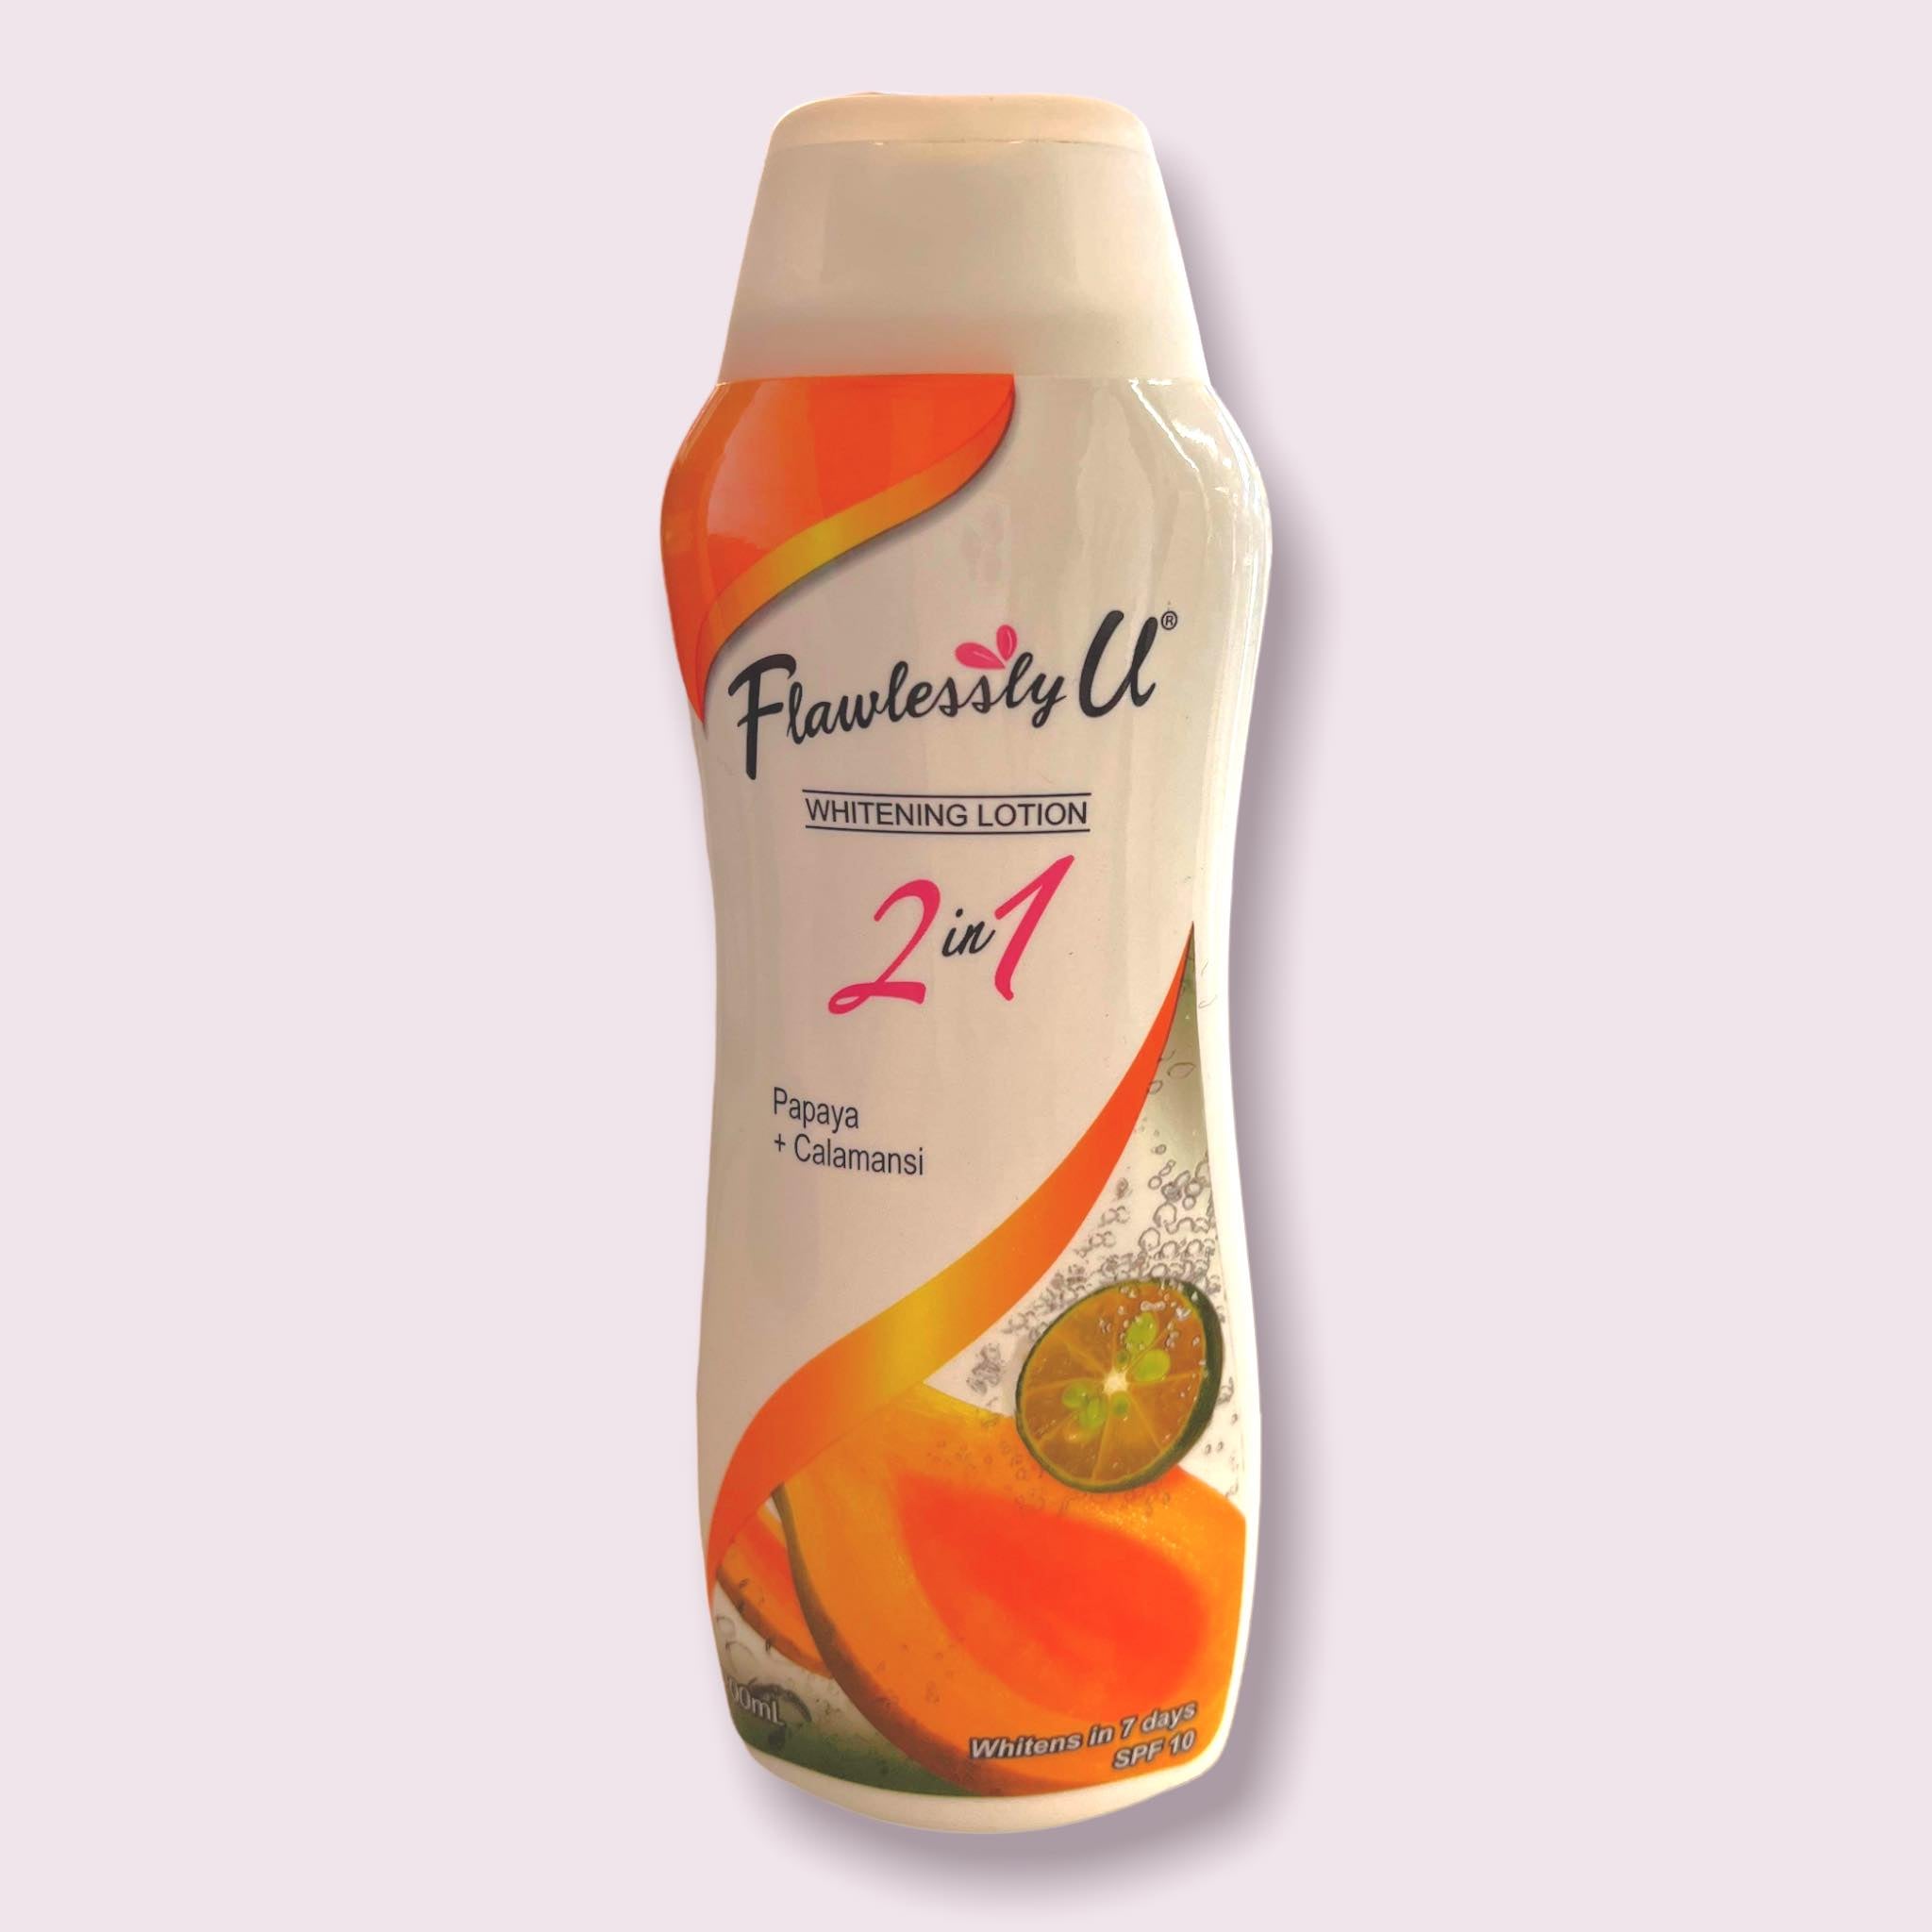 Flawlessly U - Whitening Lotion - 2 in 1 - Orange Papaya + Calamansi - SPF 10